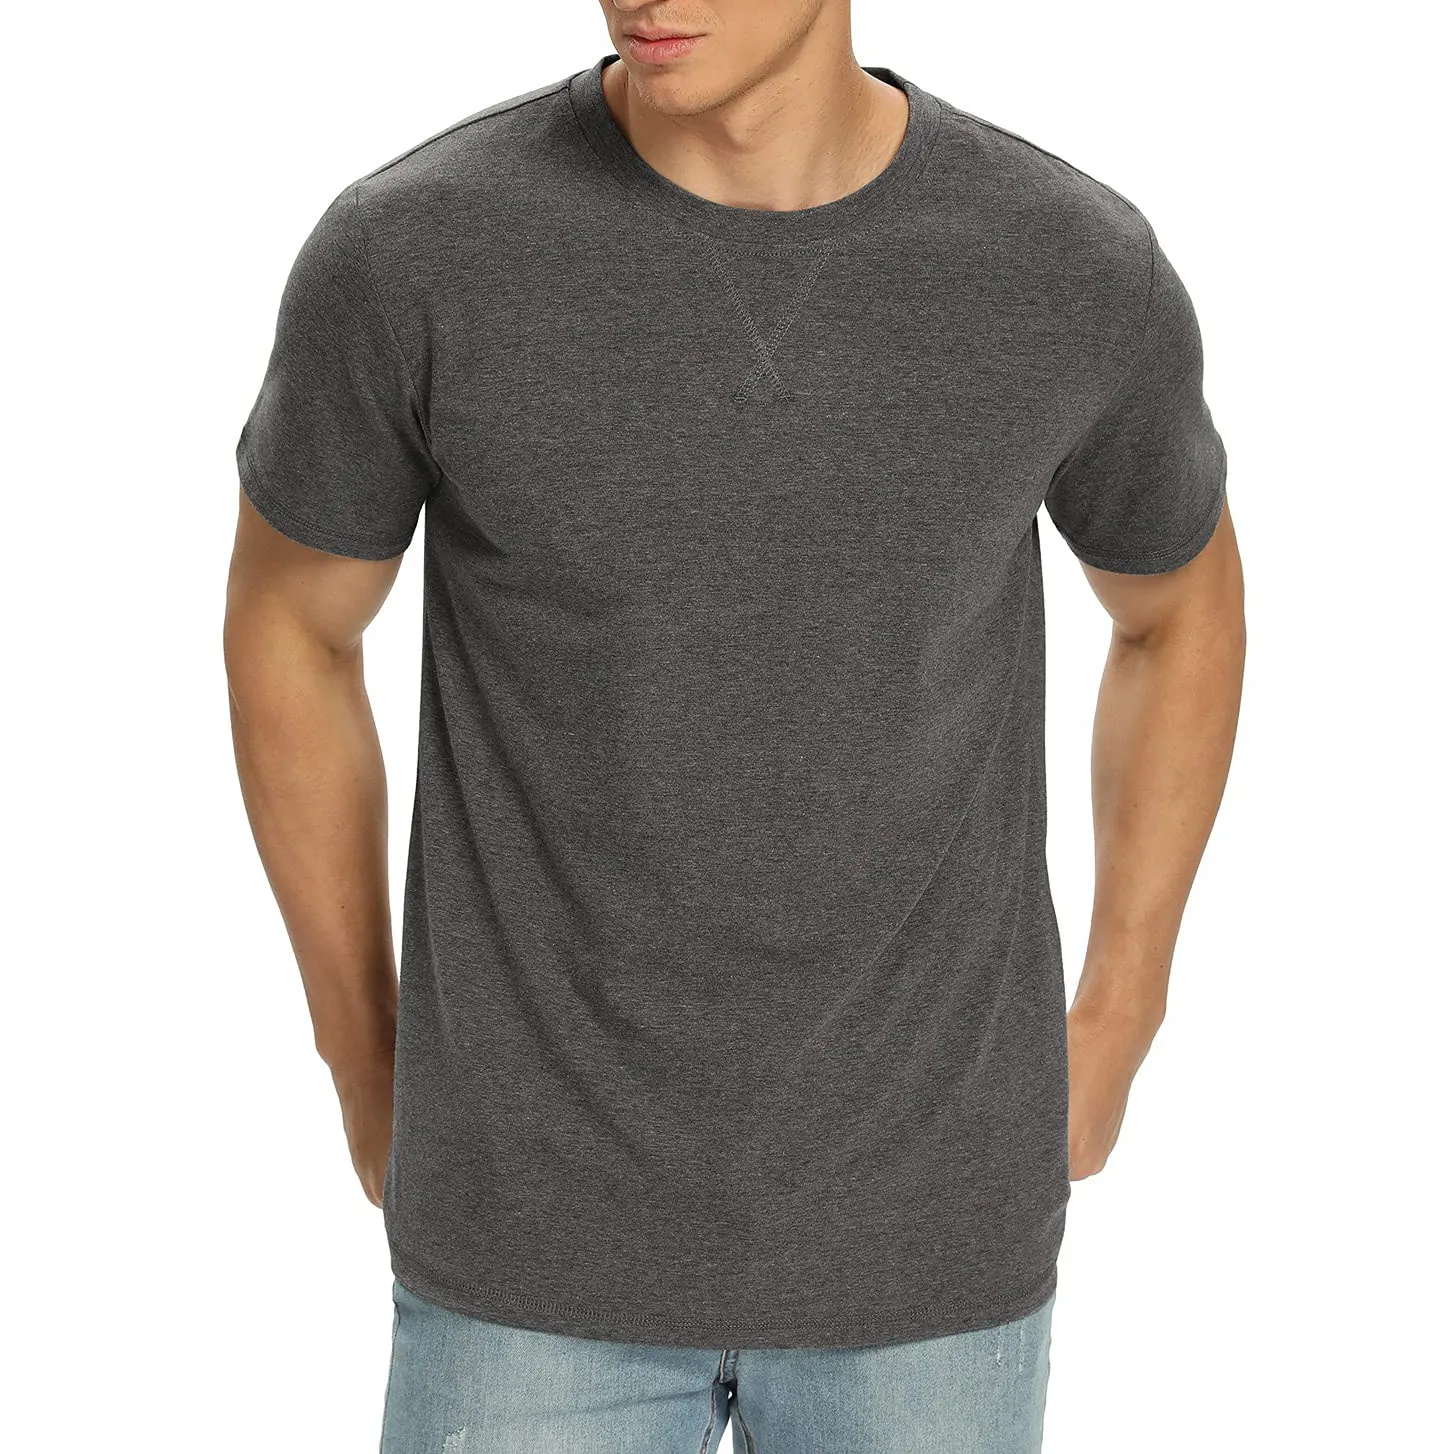 Top qualité Street Wear hommes t-shirt dans un style différent confortable et respirant uni teint pour hommes t-shirt à vendre